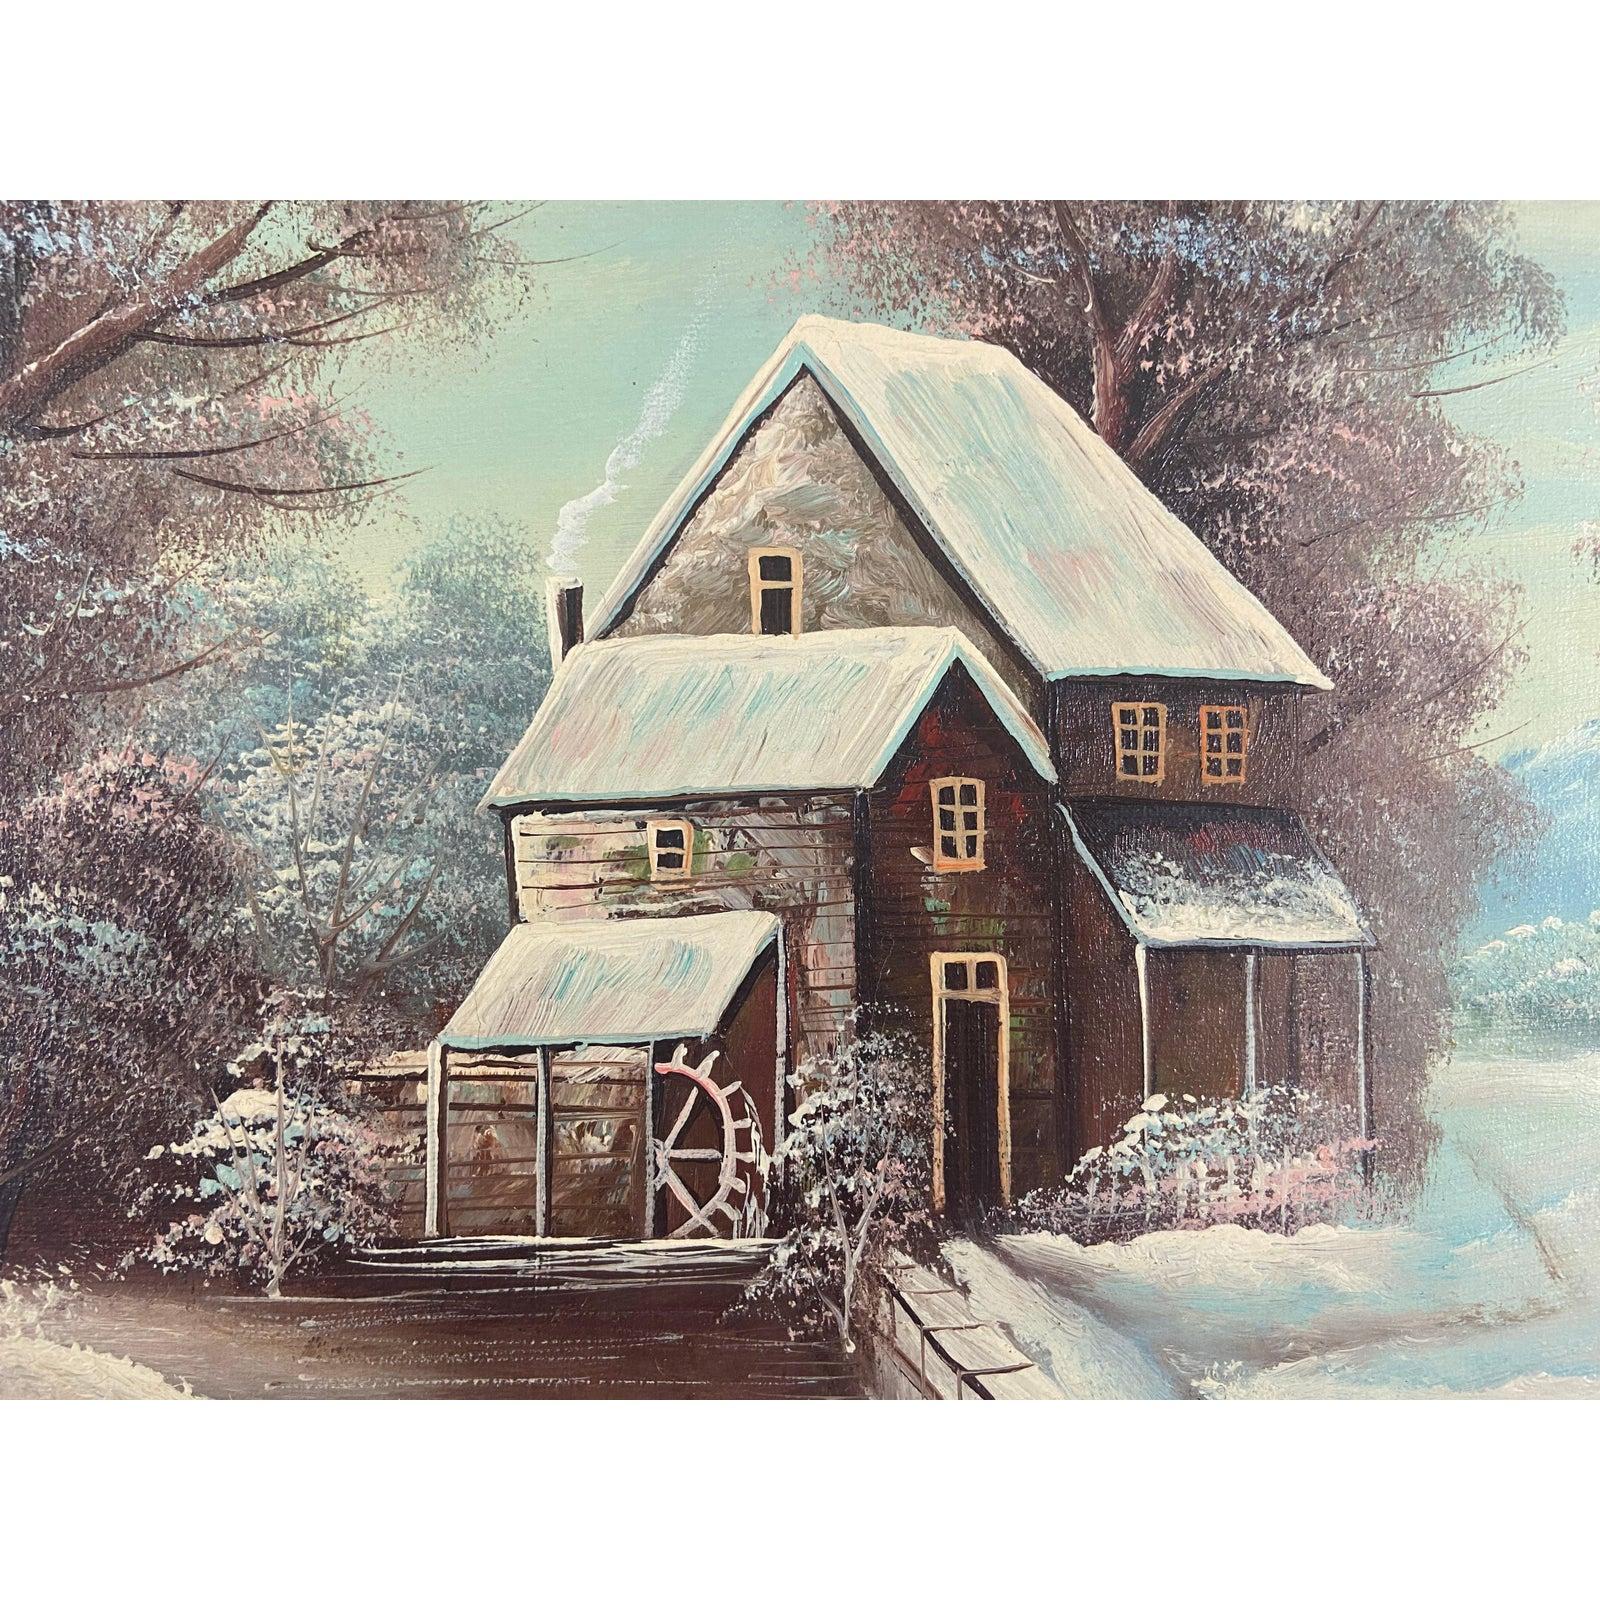 Un paysage enneigé par K.K.. La scène de la journée enneigée représente une maison / cabane au milieu des bois enneigés avec un ciel bleu. Le tableau est encadré. 

Dimensions
Encadré : 17.75